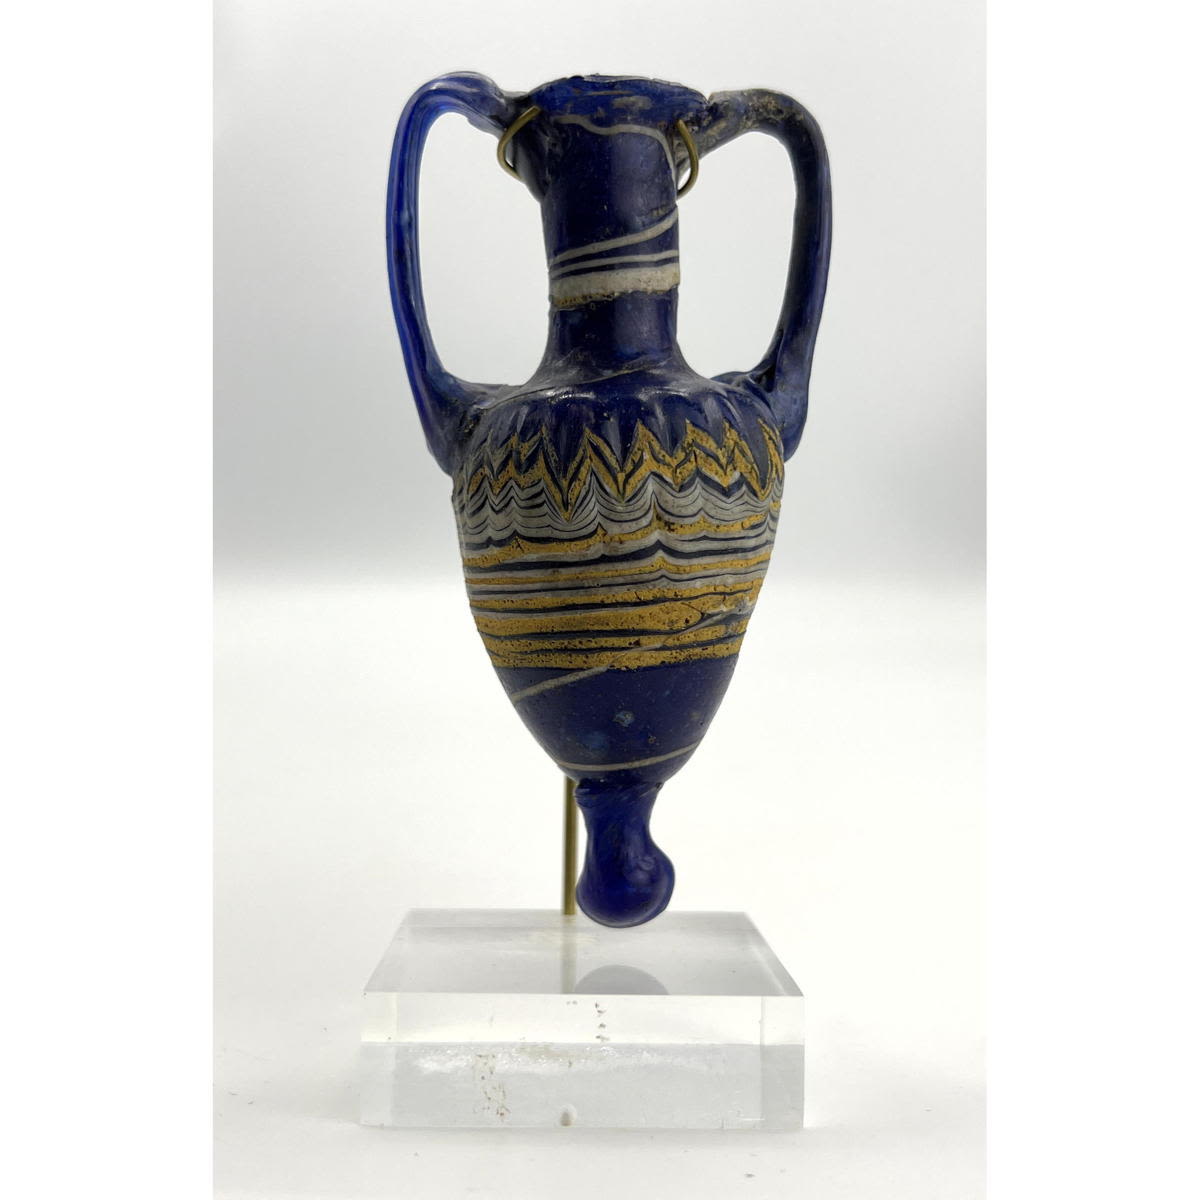 Royal Blue 2 handled amphora vessel